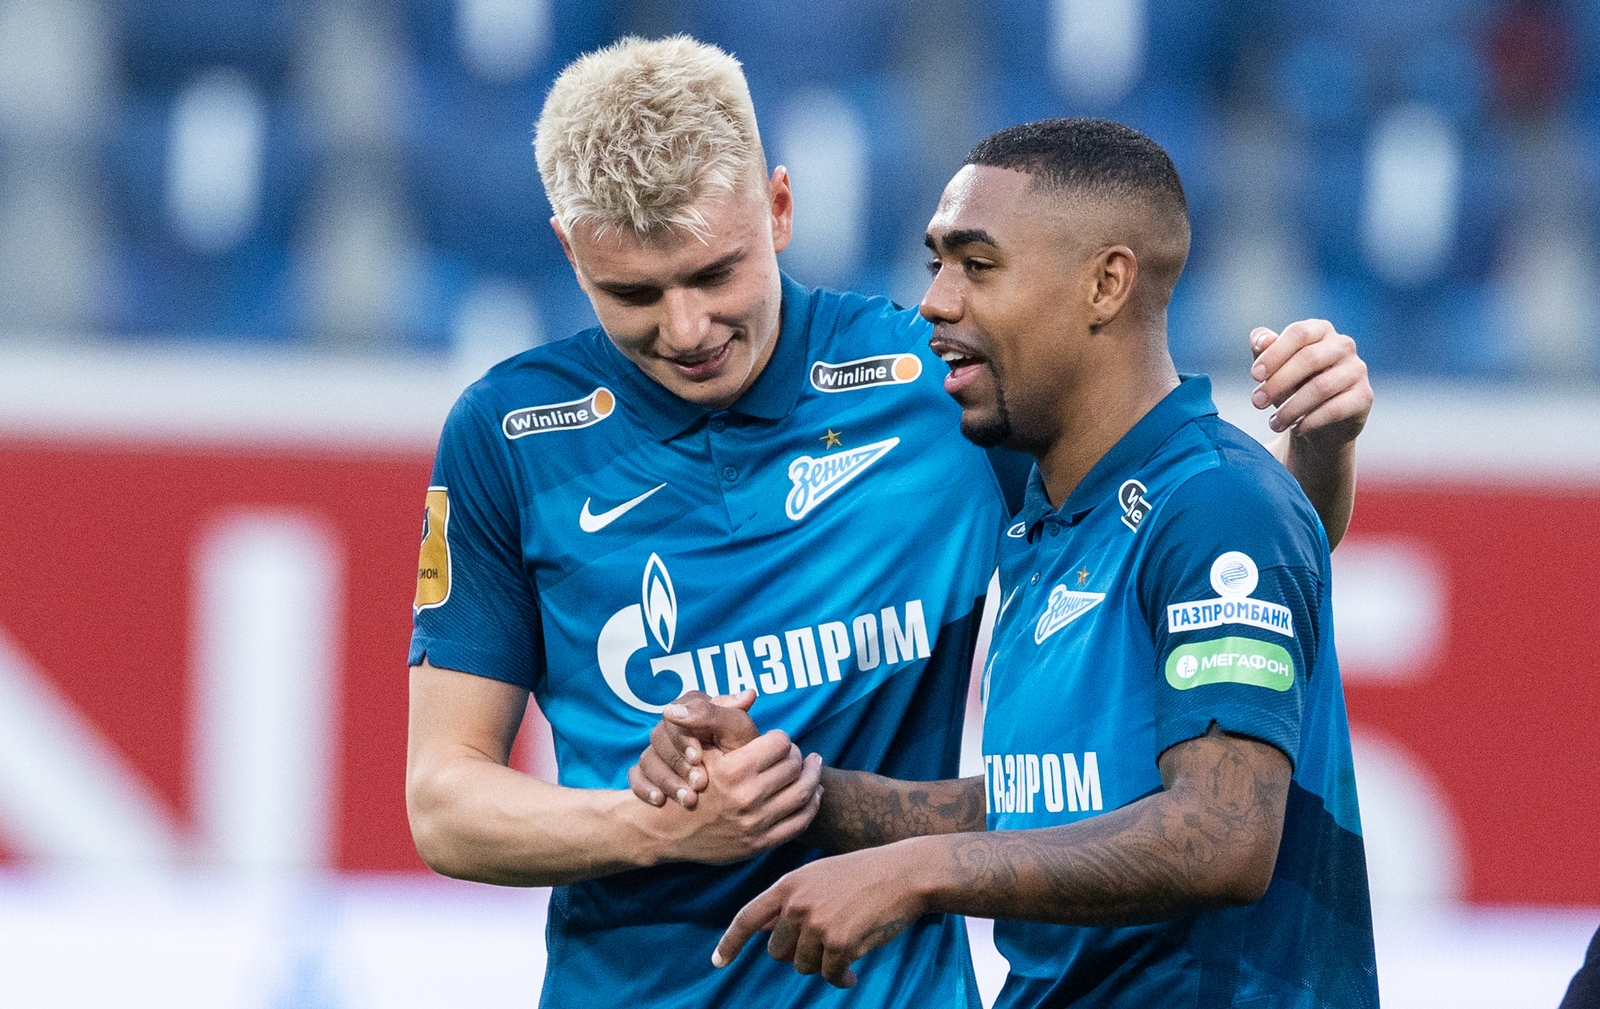 Malcom marca primeiro gol pelo Zenit em goleada no Campeonato Russo